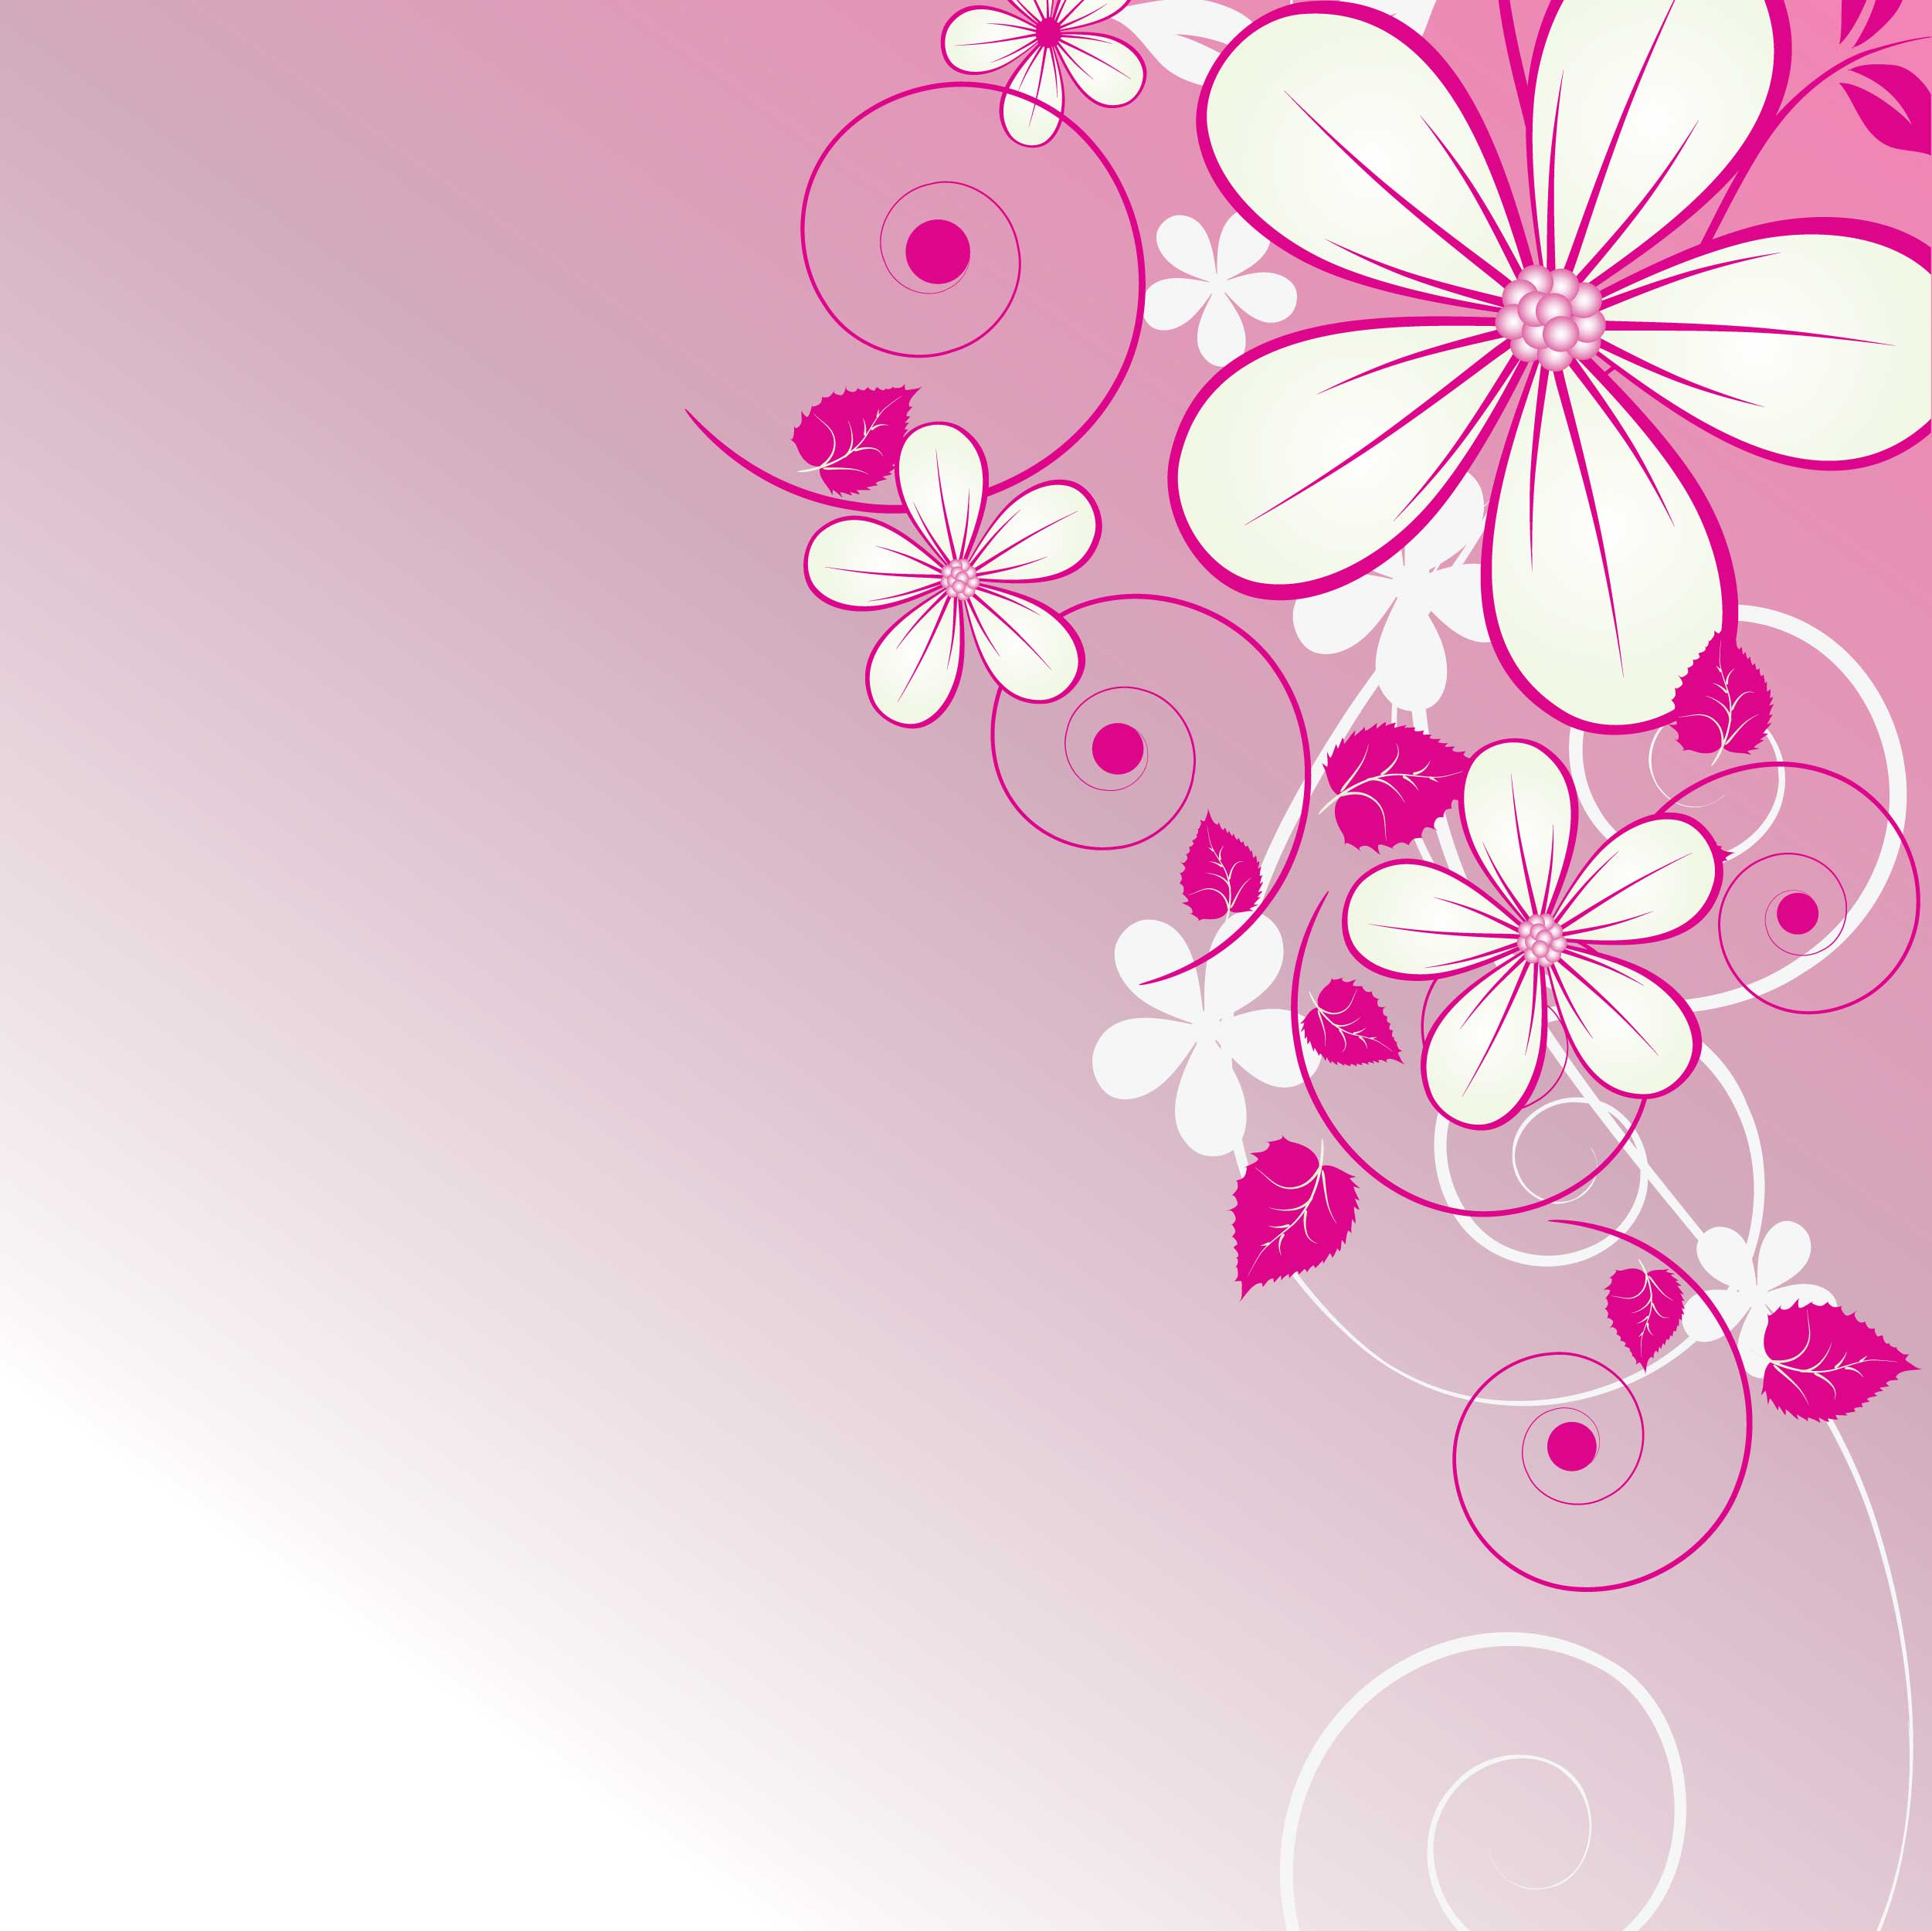 花のイラスト フリー素材 壁紙 背景no 6 赤紫 茎葉 光彩